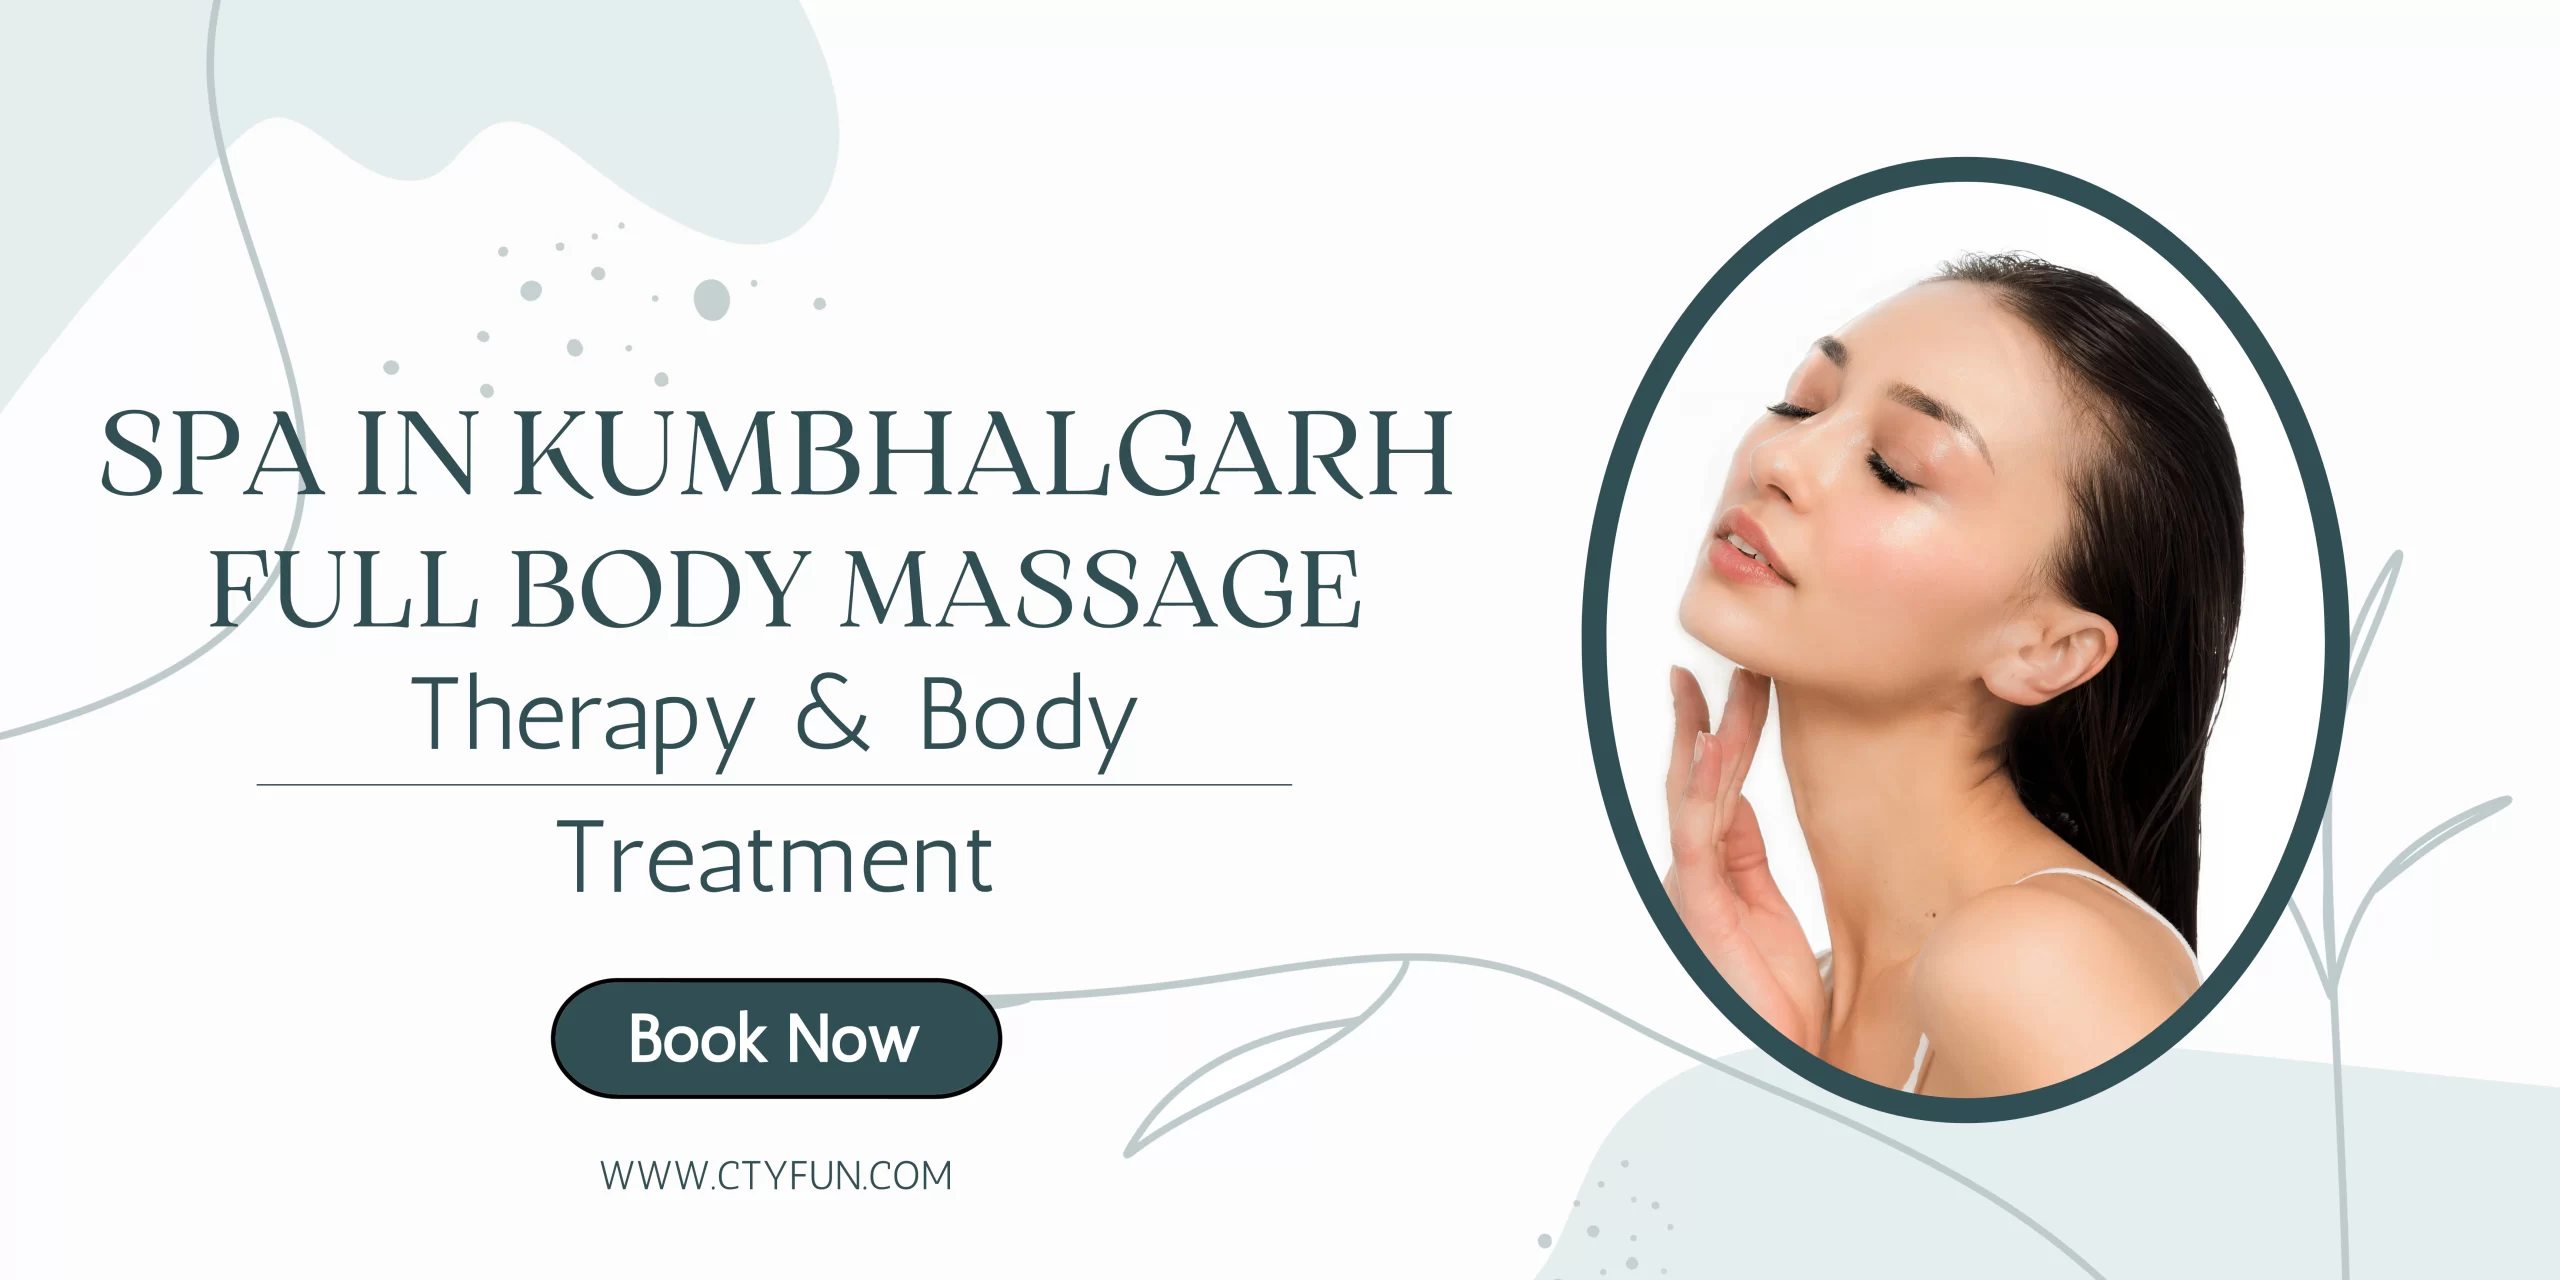 Spa in Kumbhalgarh | Full Body Massage in Kumbhalgarh